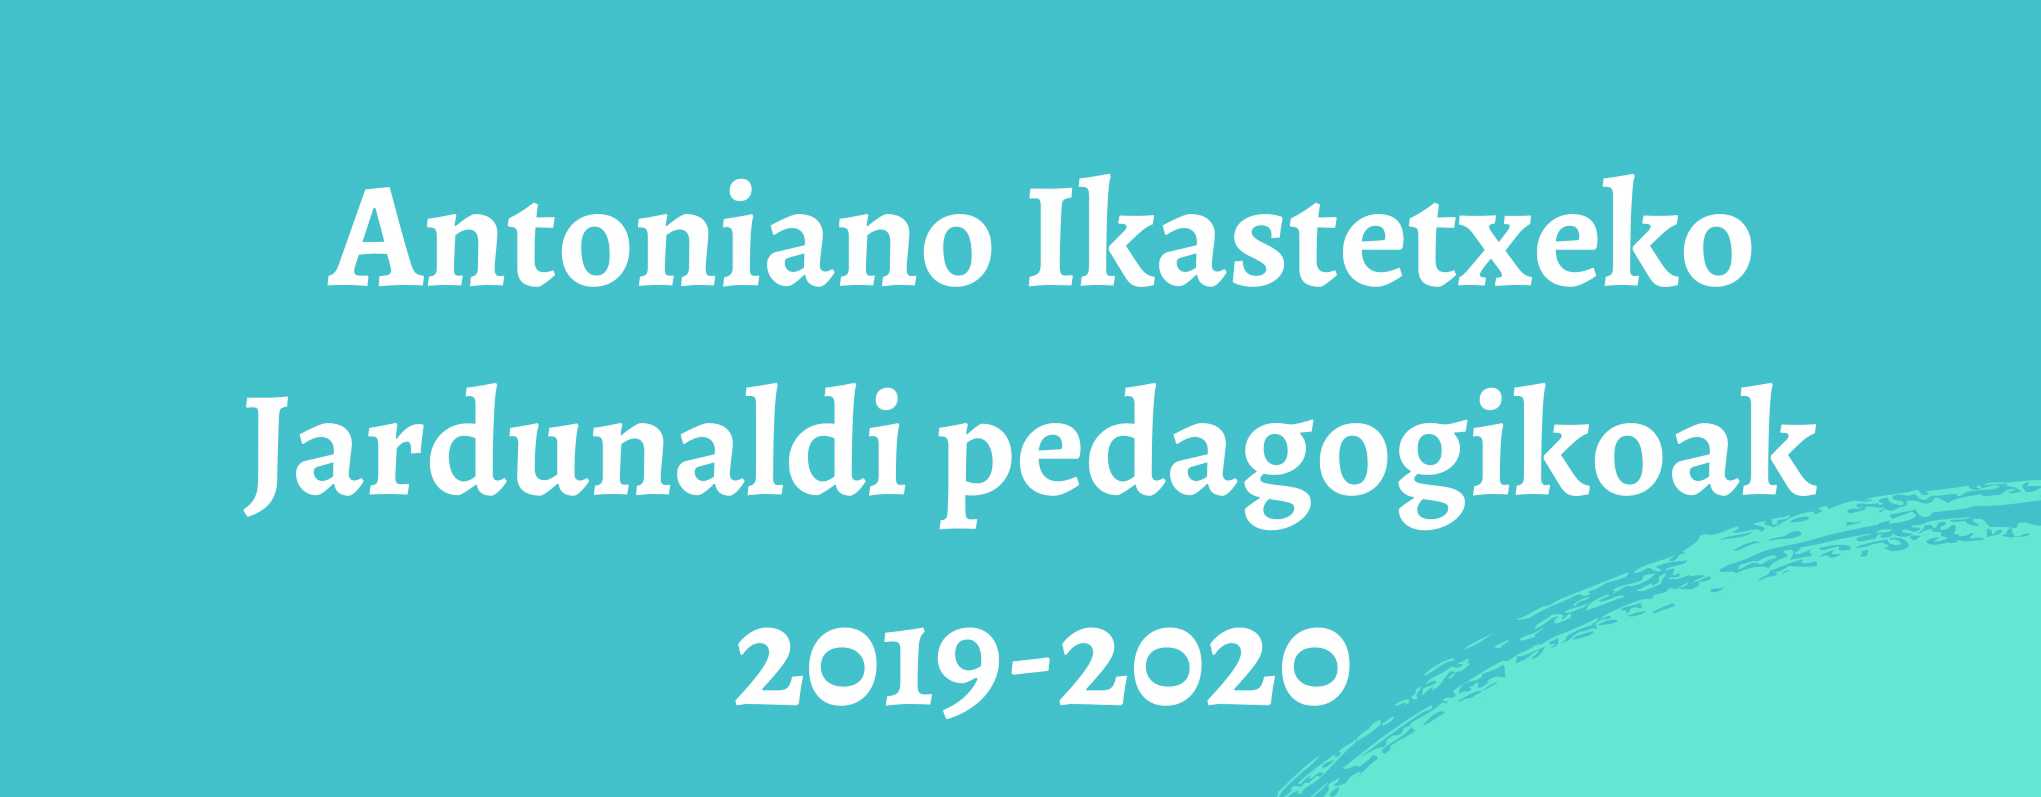 Jardunaldi pedagogikoak 2019 -2020